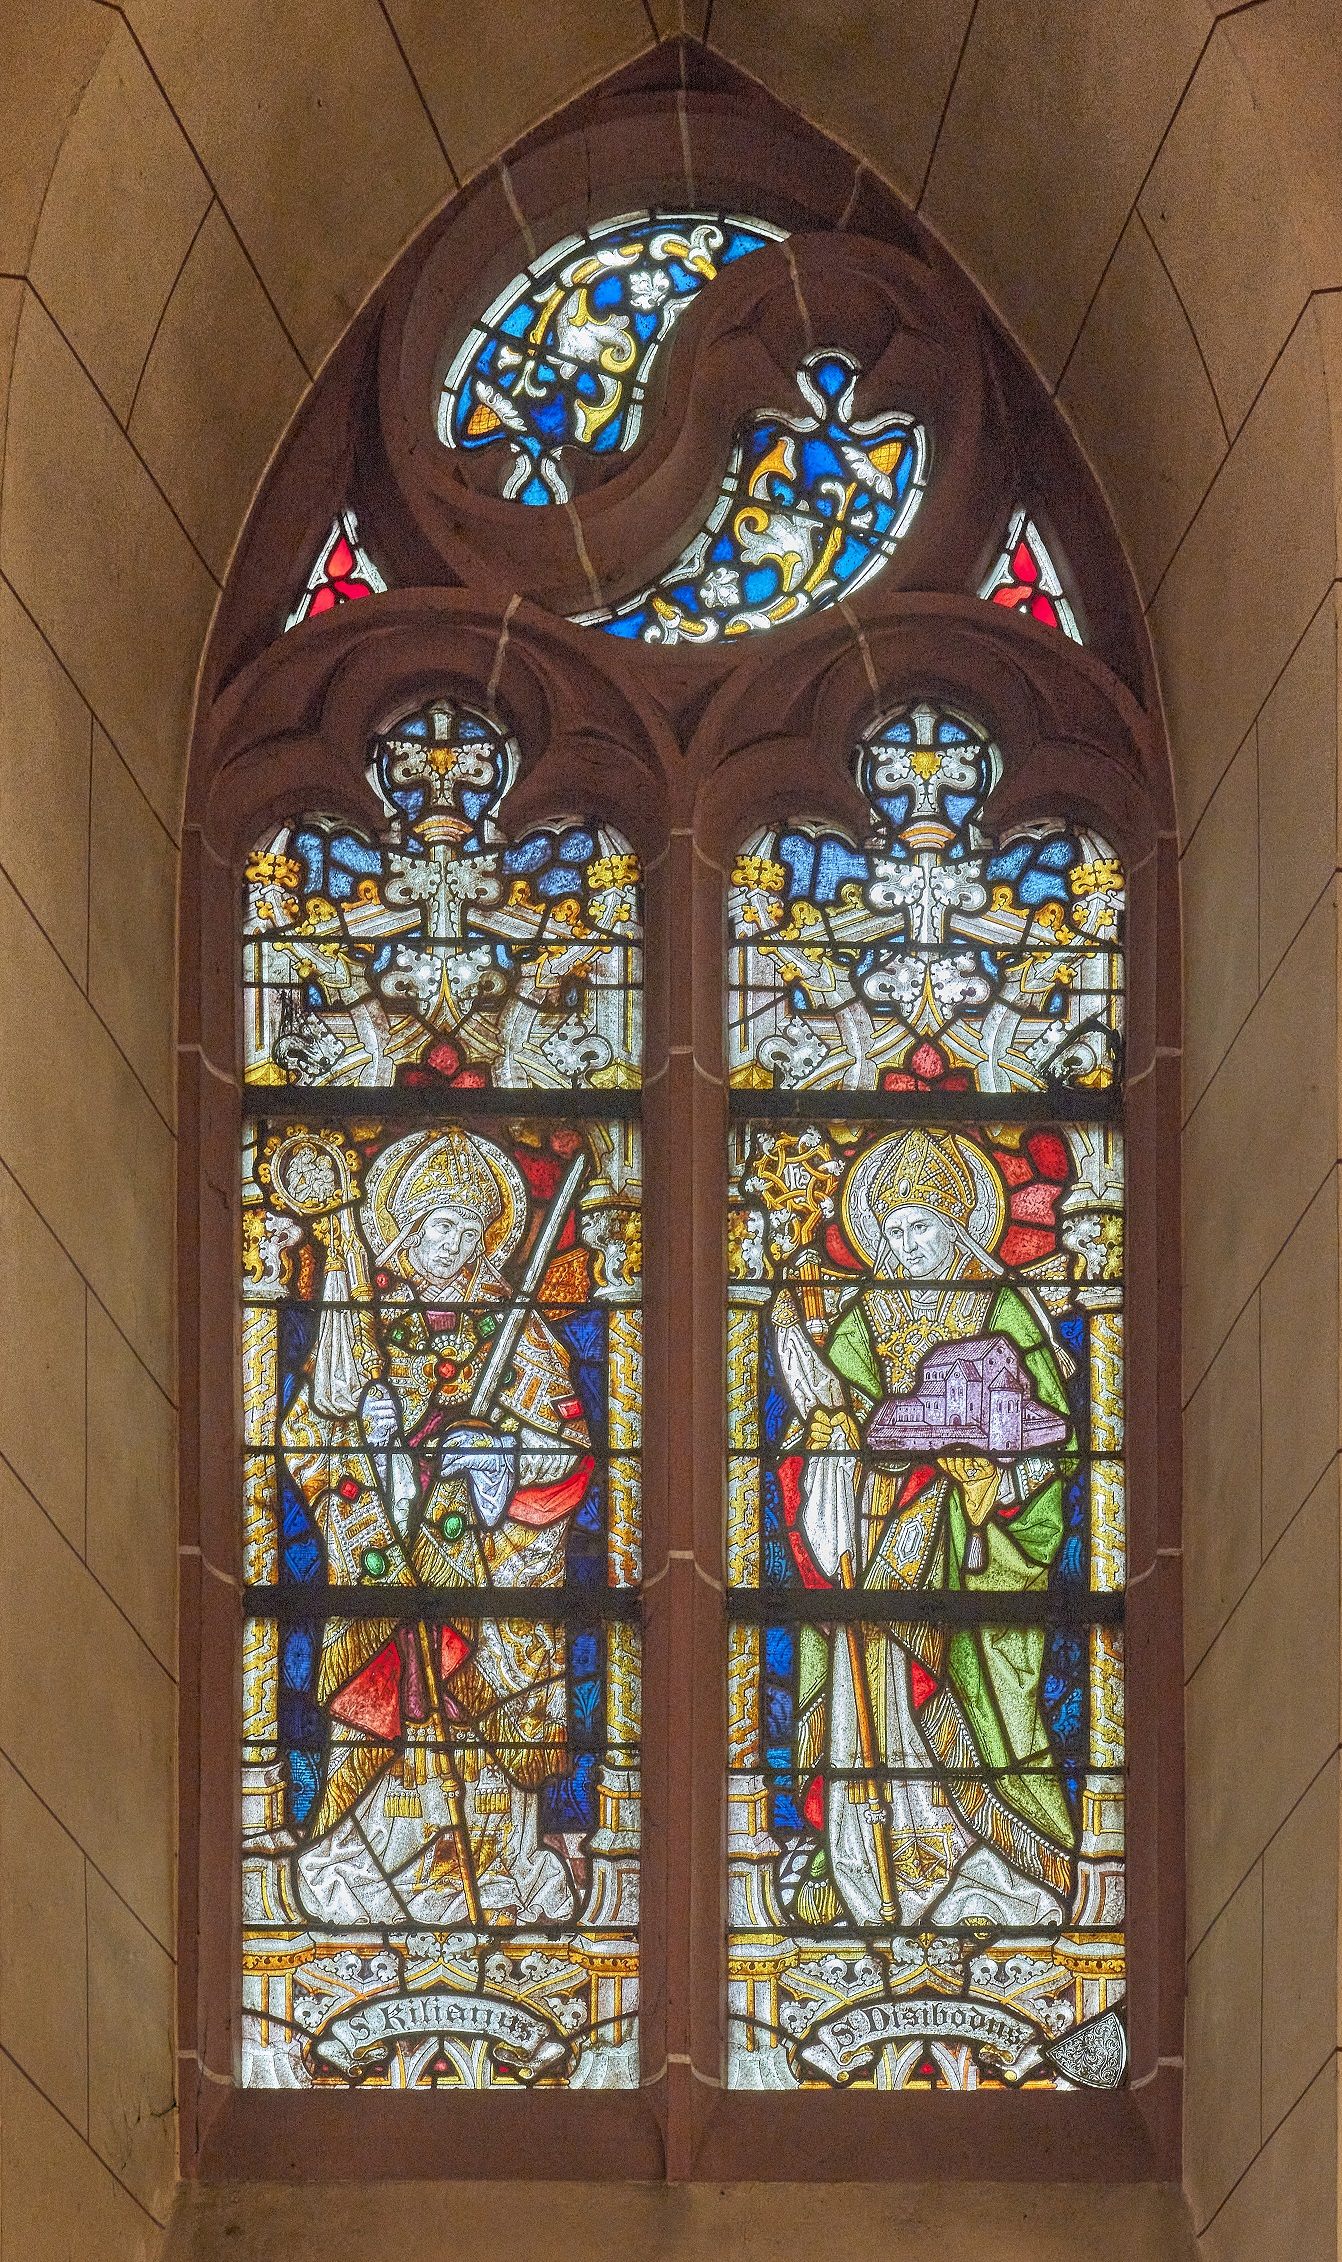 5. linkes Hochschifffenster: Hl. Kilian, der Apostel Bayerns und hl. Abt Disibodenberg (c) W. Vollrath